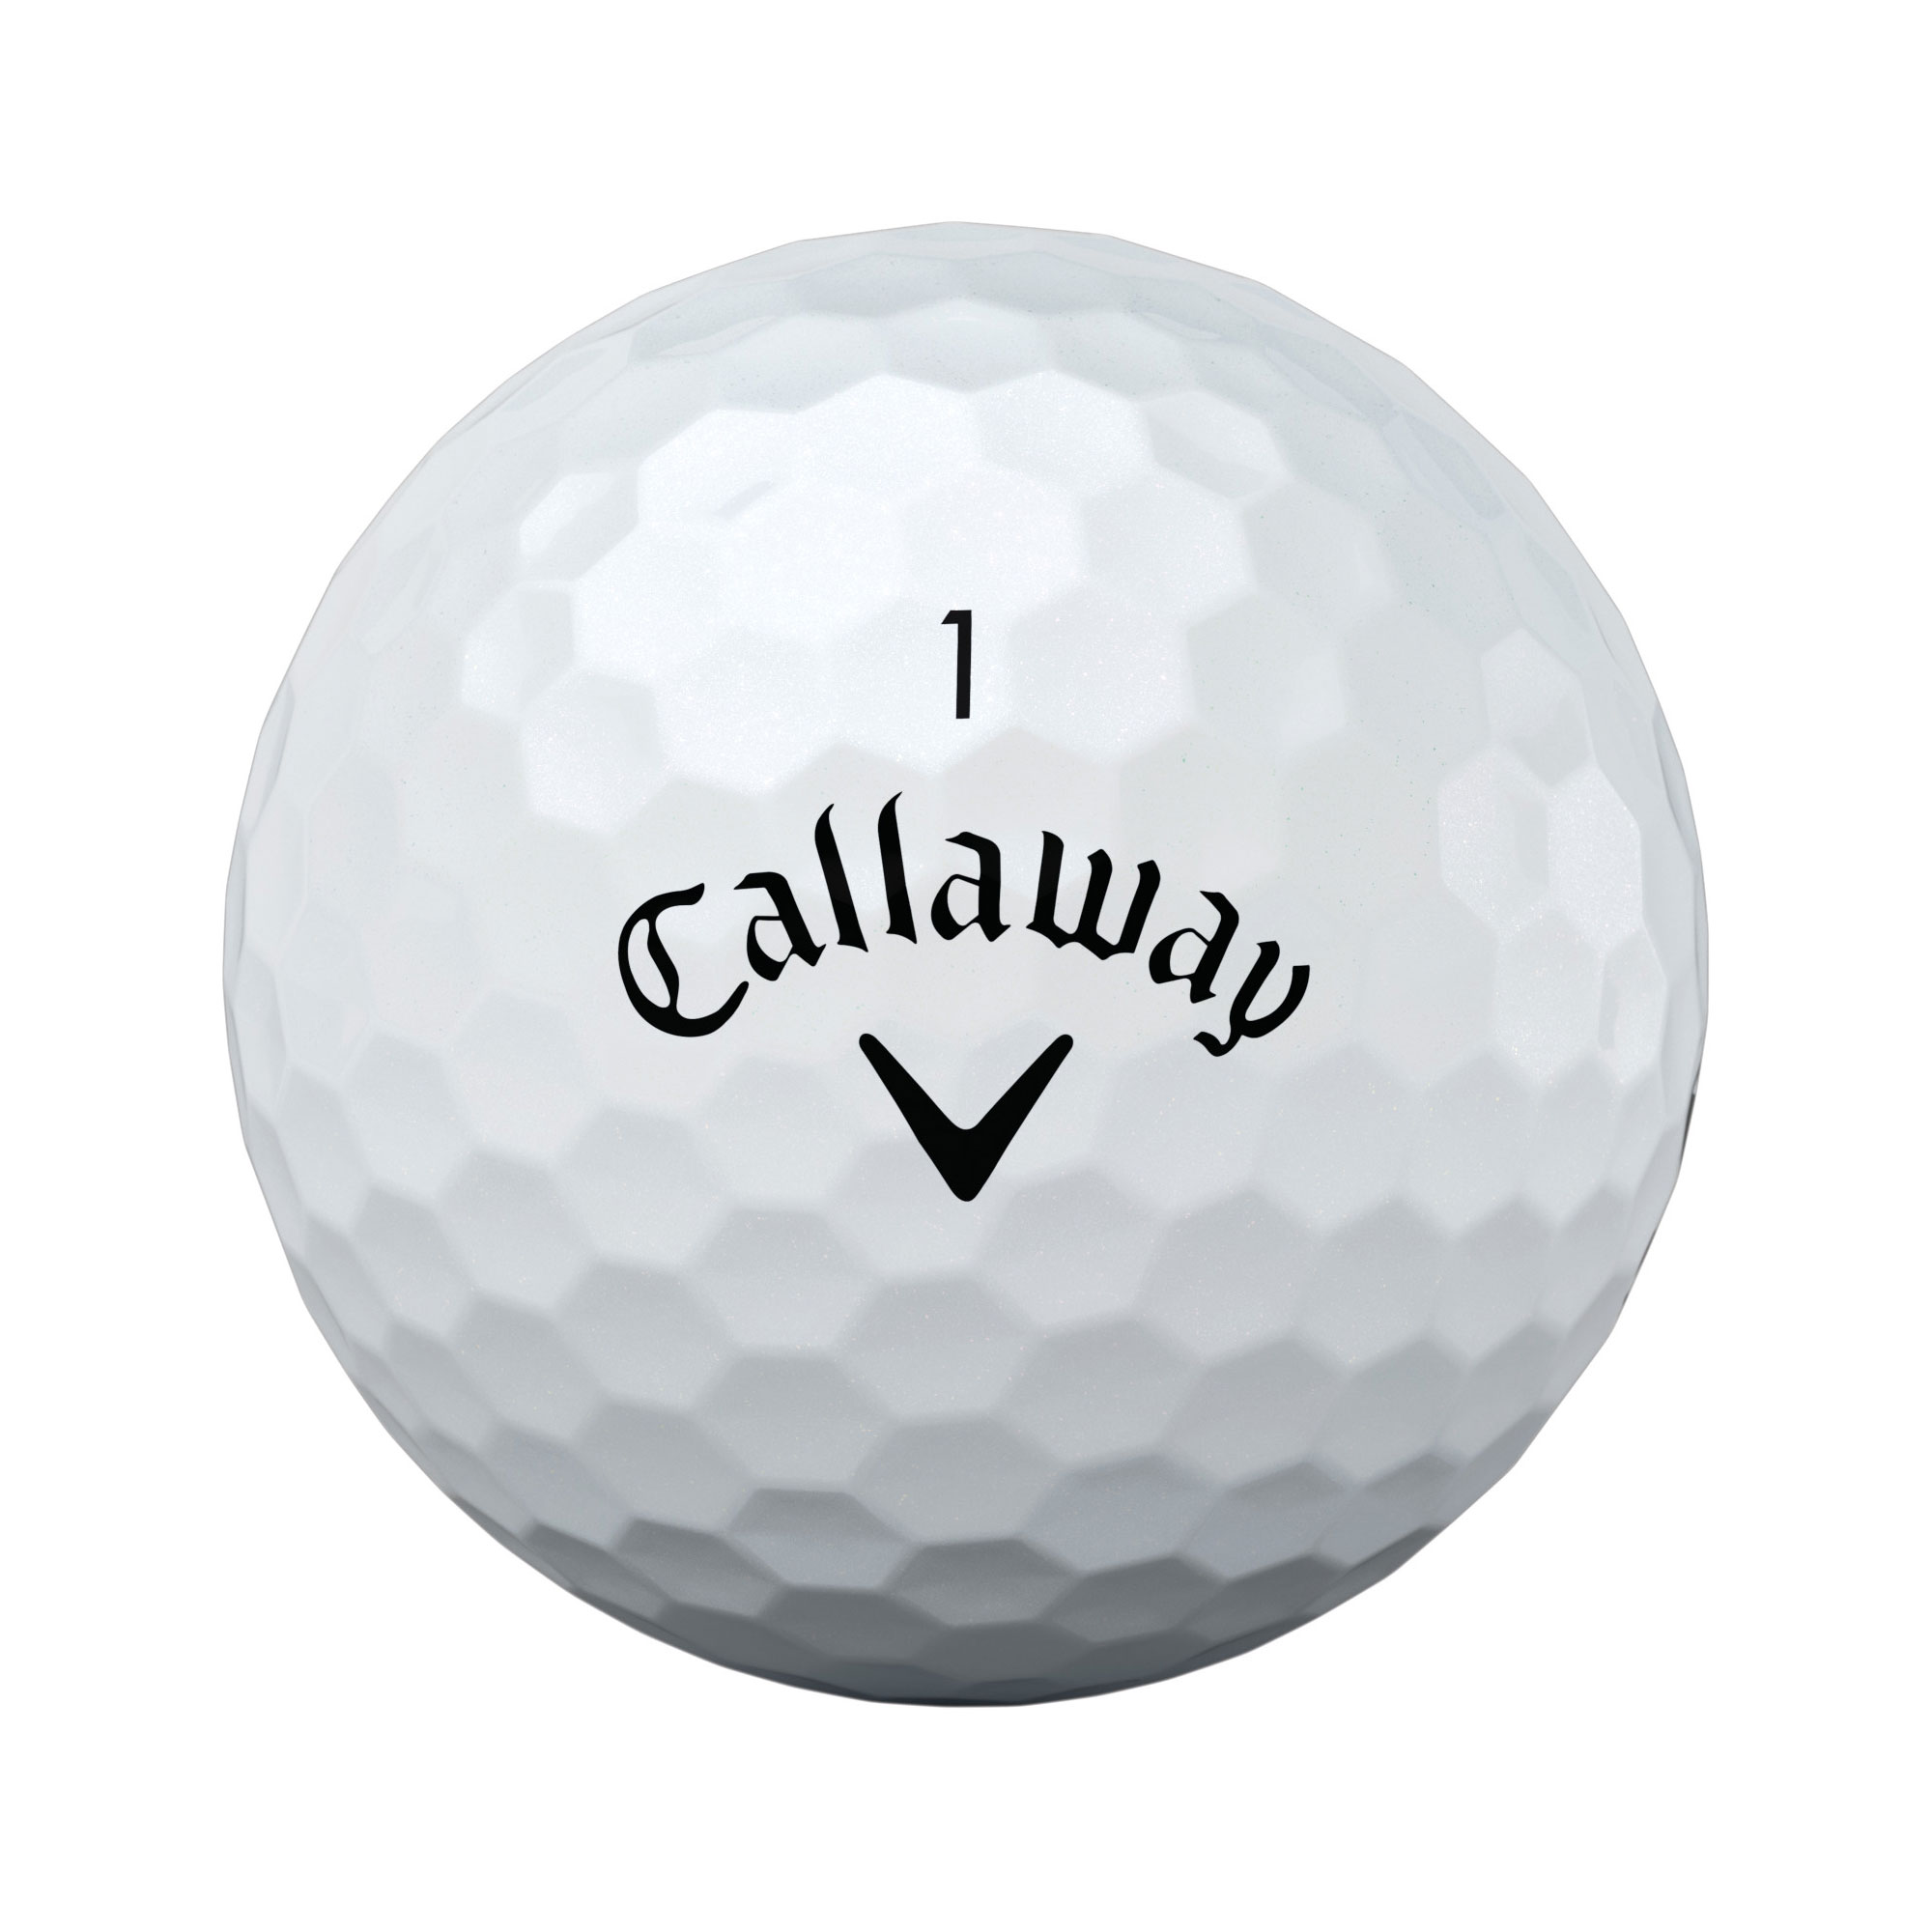 Callaway REVA Golfbälle bedruckt, weiss (VPE à 12 Bälle)